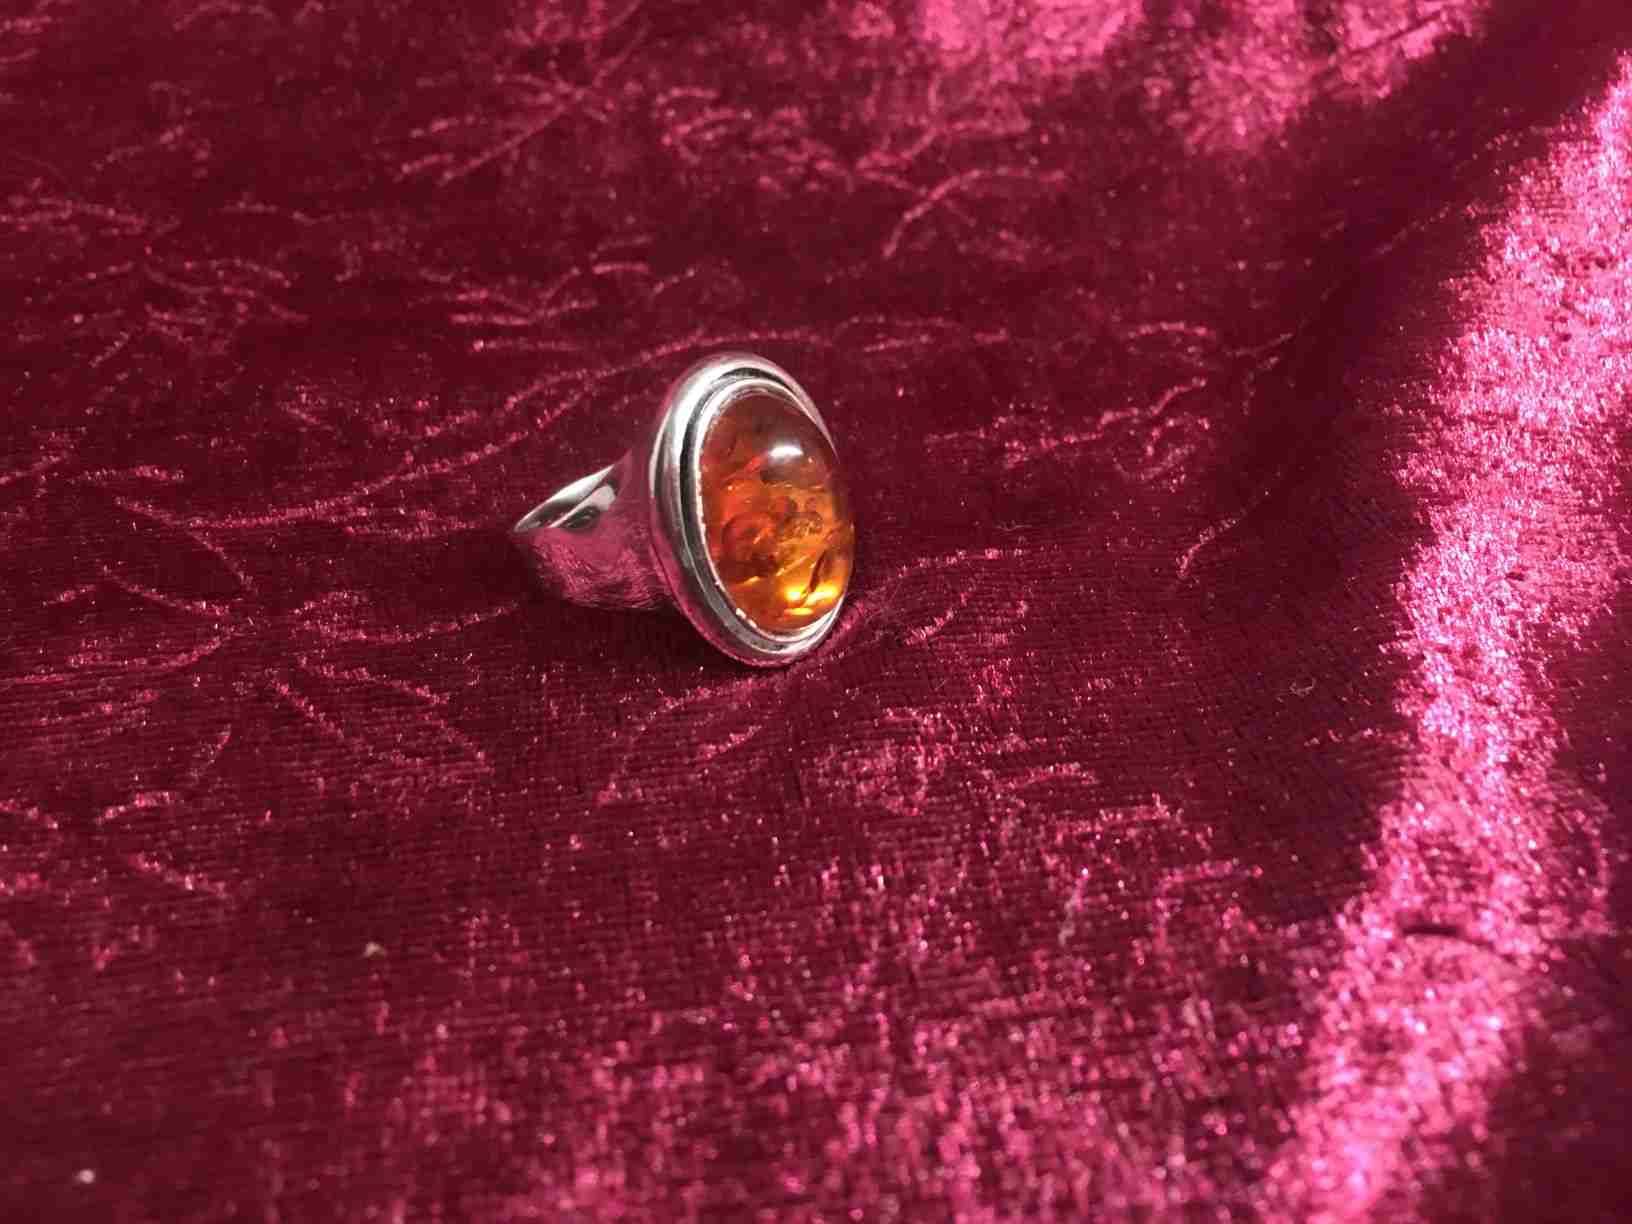 Solid ring i sterlingsølv (925S) der på smuk vis indfatter et unikt ravstykke i Baltisk blodrav. Perfekt vintage stand. Pris: 200, - Kr.